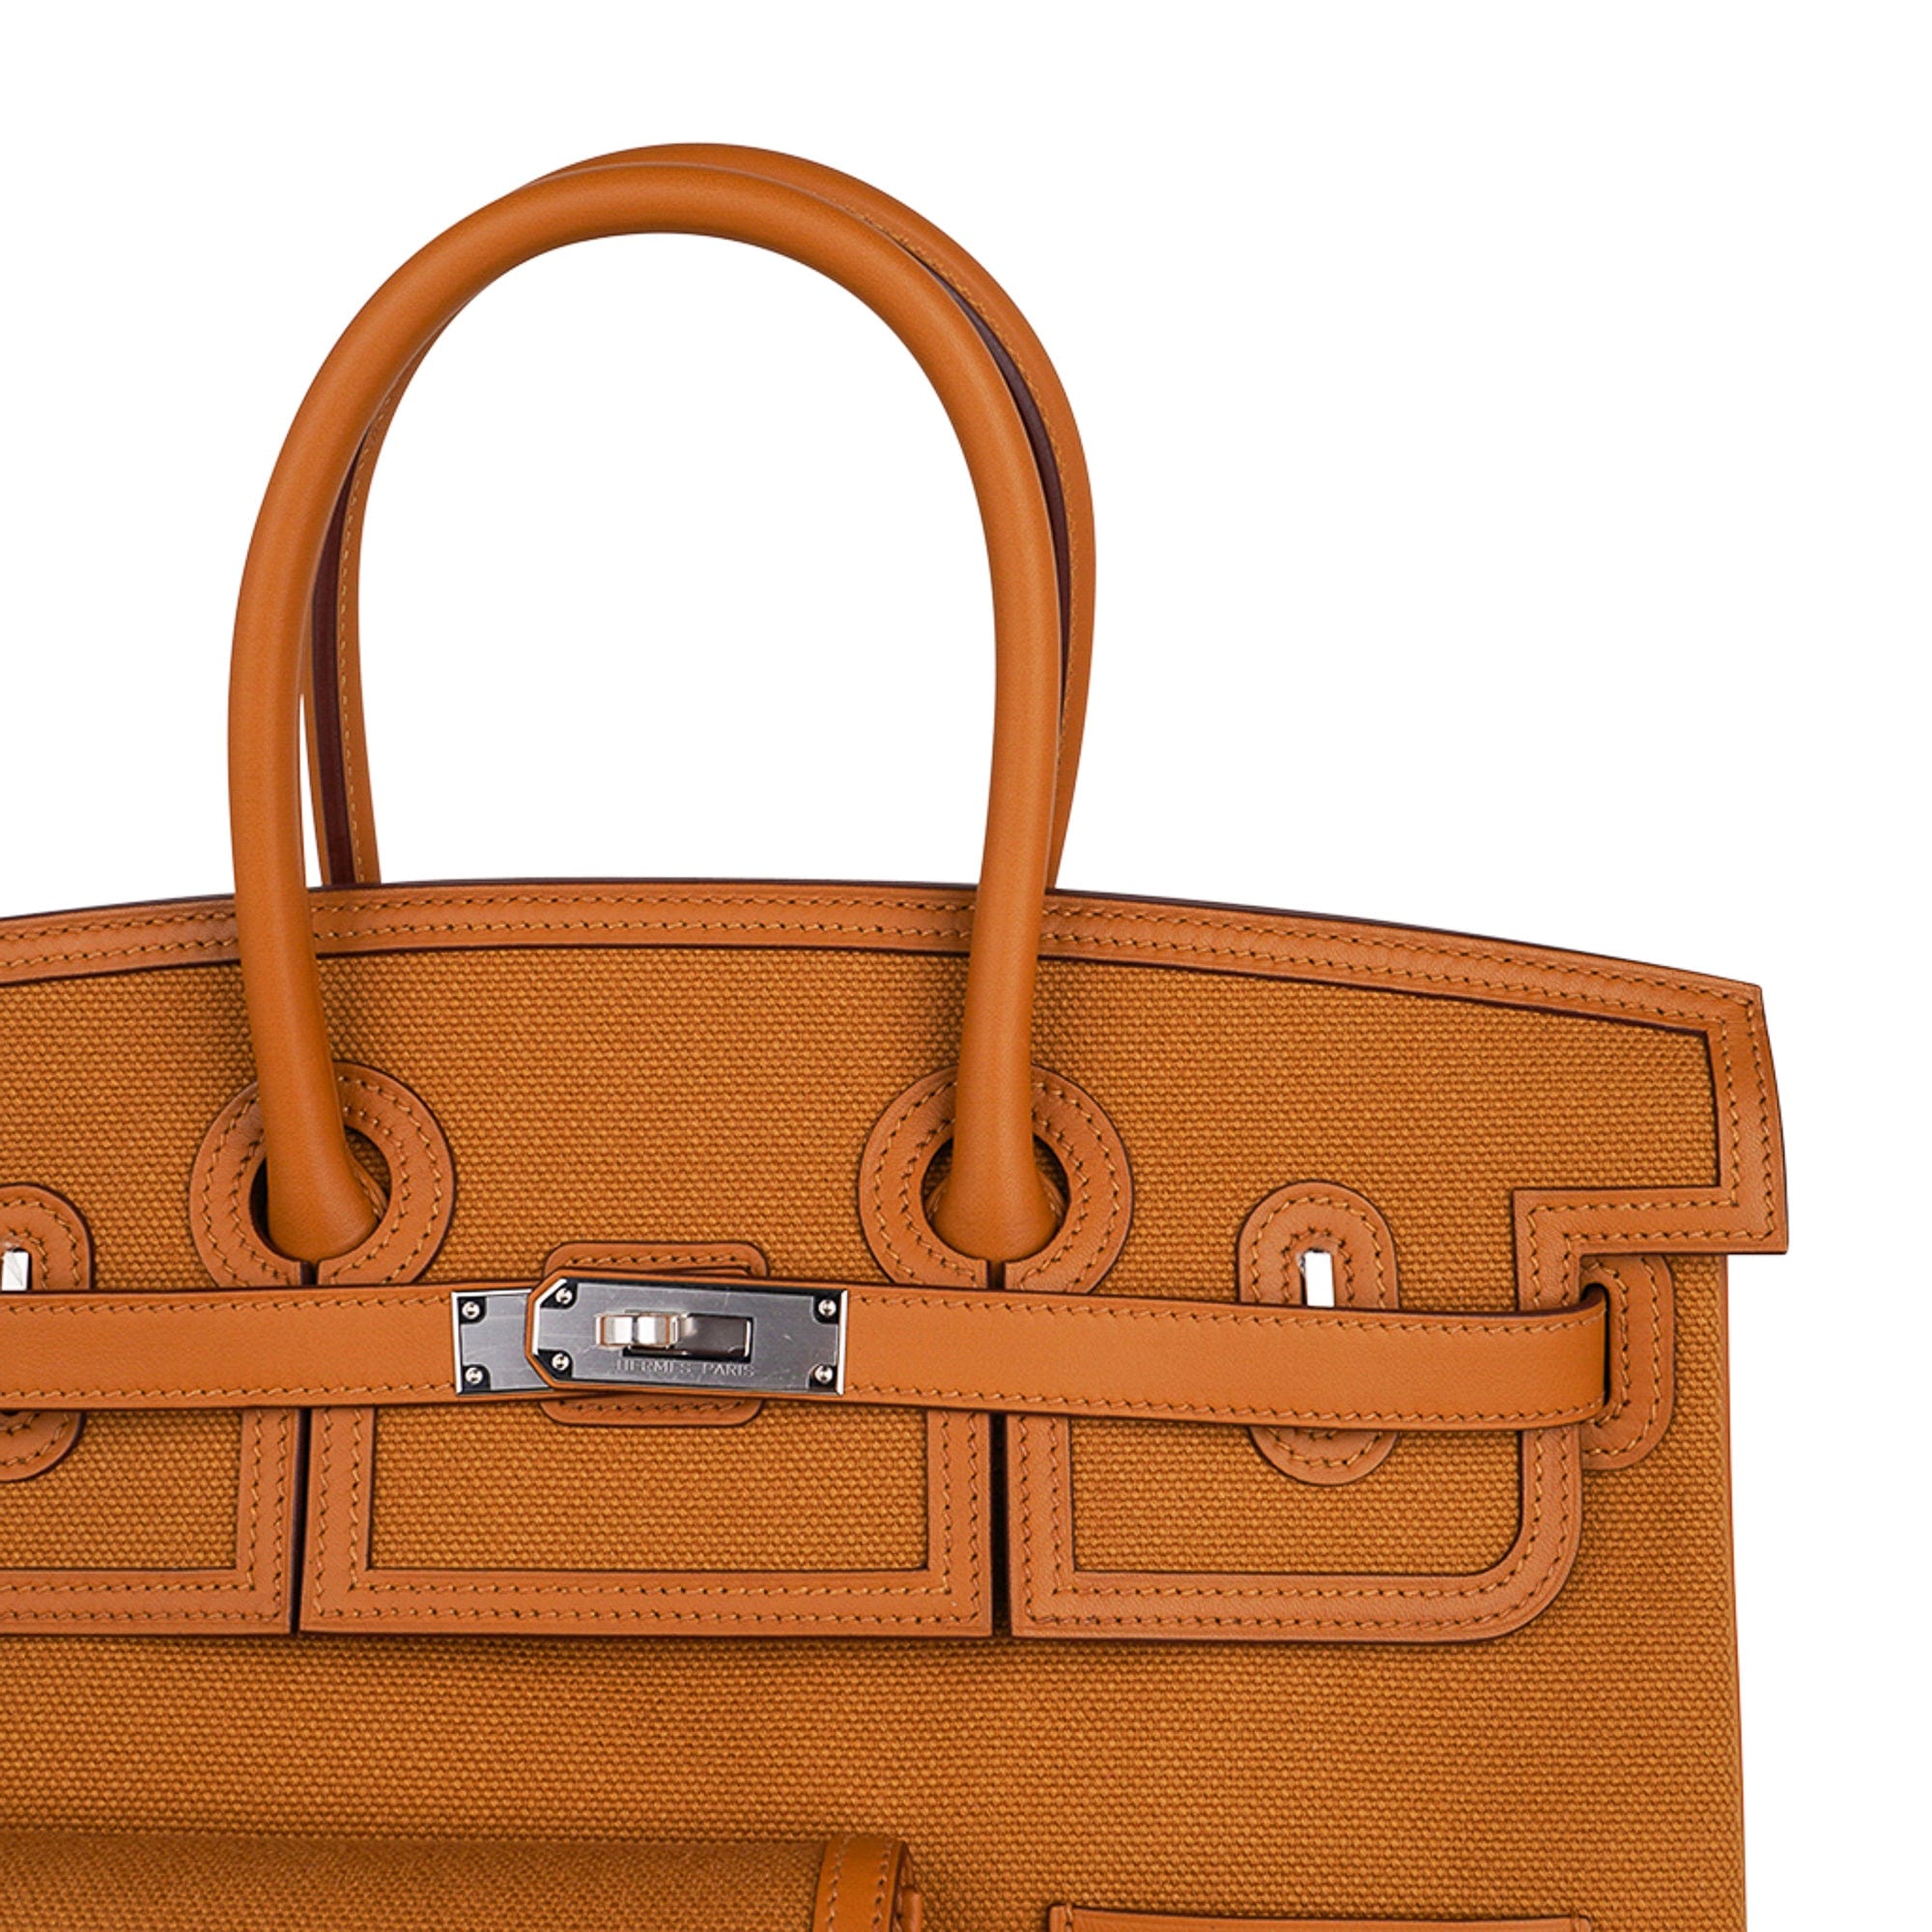 The limited-edition Hermès Birkin Cargo: Utilitarian, Sturdy, Rugged, Fun